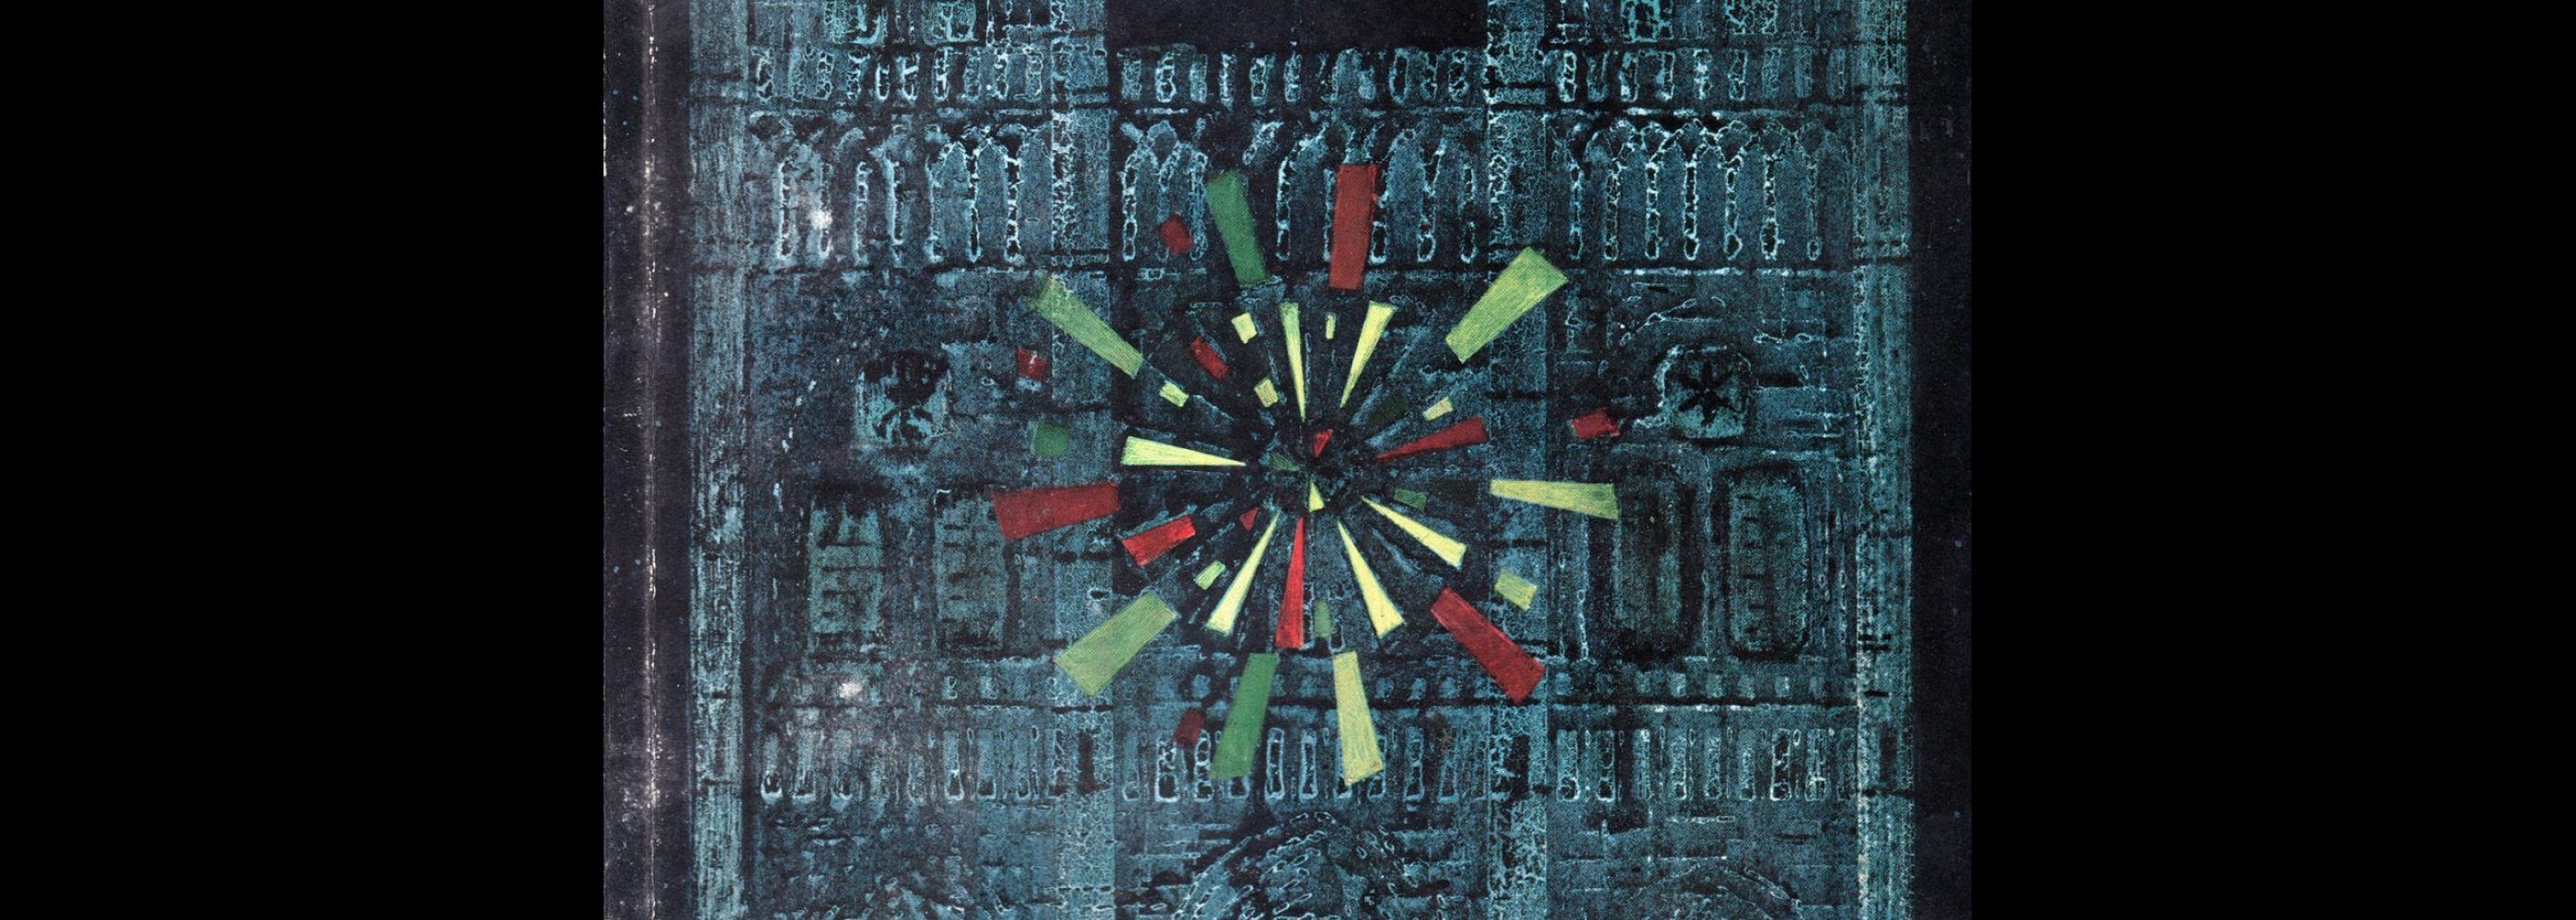 Gebrauchsgraphik, 12, 1953. Cover design by Karl Hans Walter.